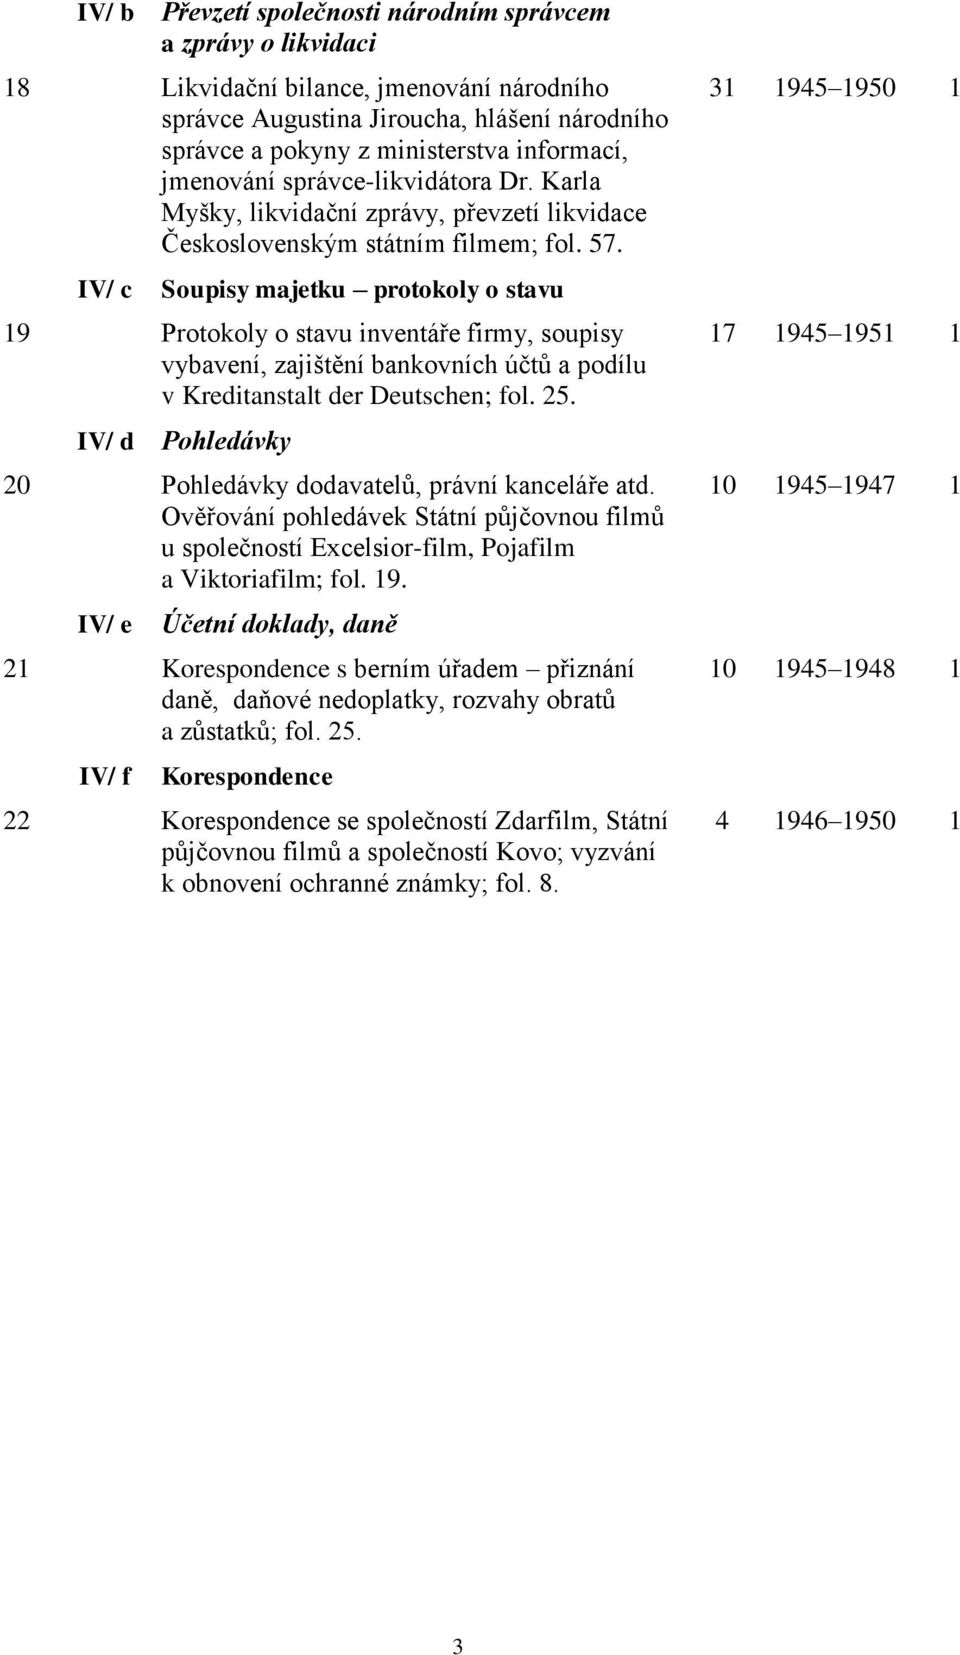 IV/ c Soupisy majetku protokoly o stavu 19 Protokoly o stavu inventáře firmy, soupisy vybavení, zajištění bankovních účtů a podílu v Kreditanstalt der Deutschen; fol. 25.